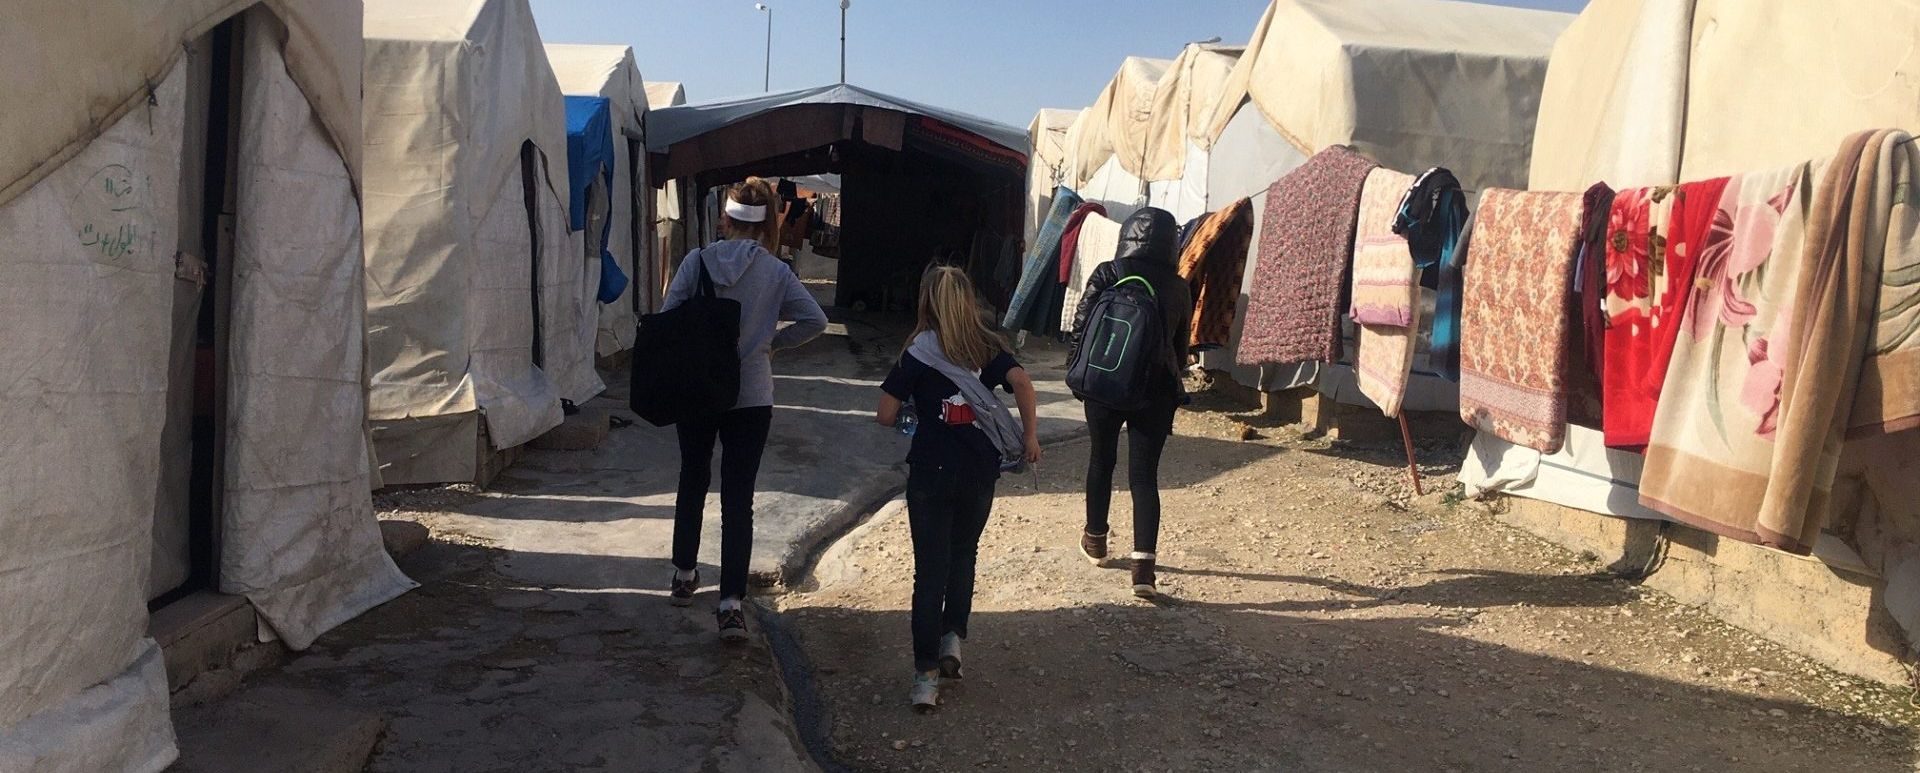  street scene with children in Iraq 